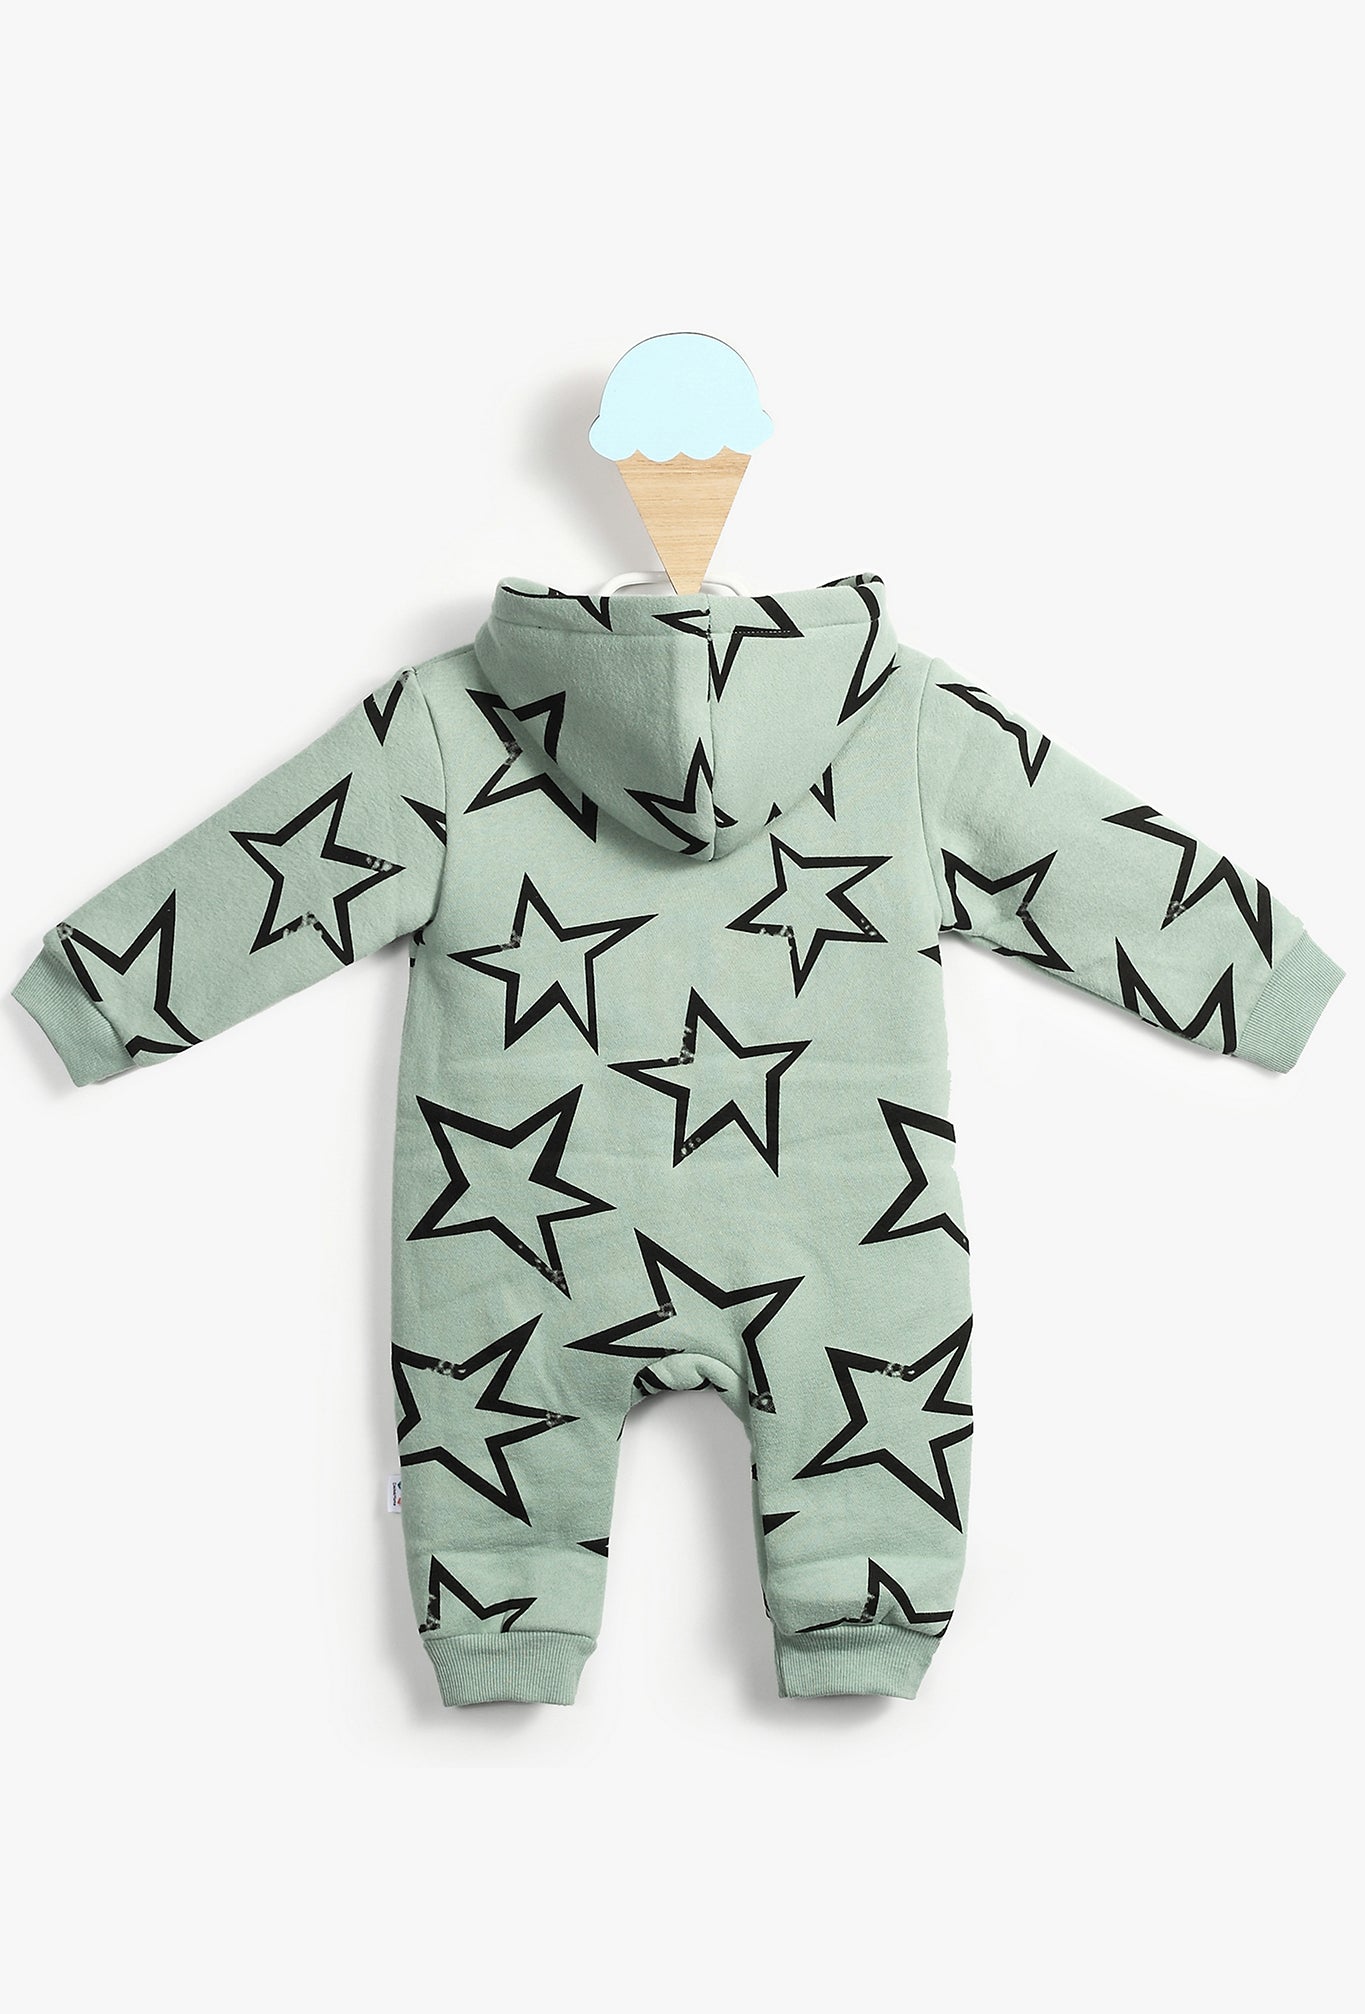 Baby Boy Stars Printed Green Hooded Onesie